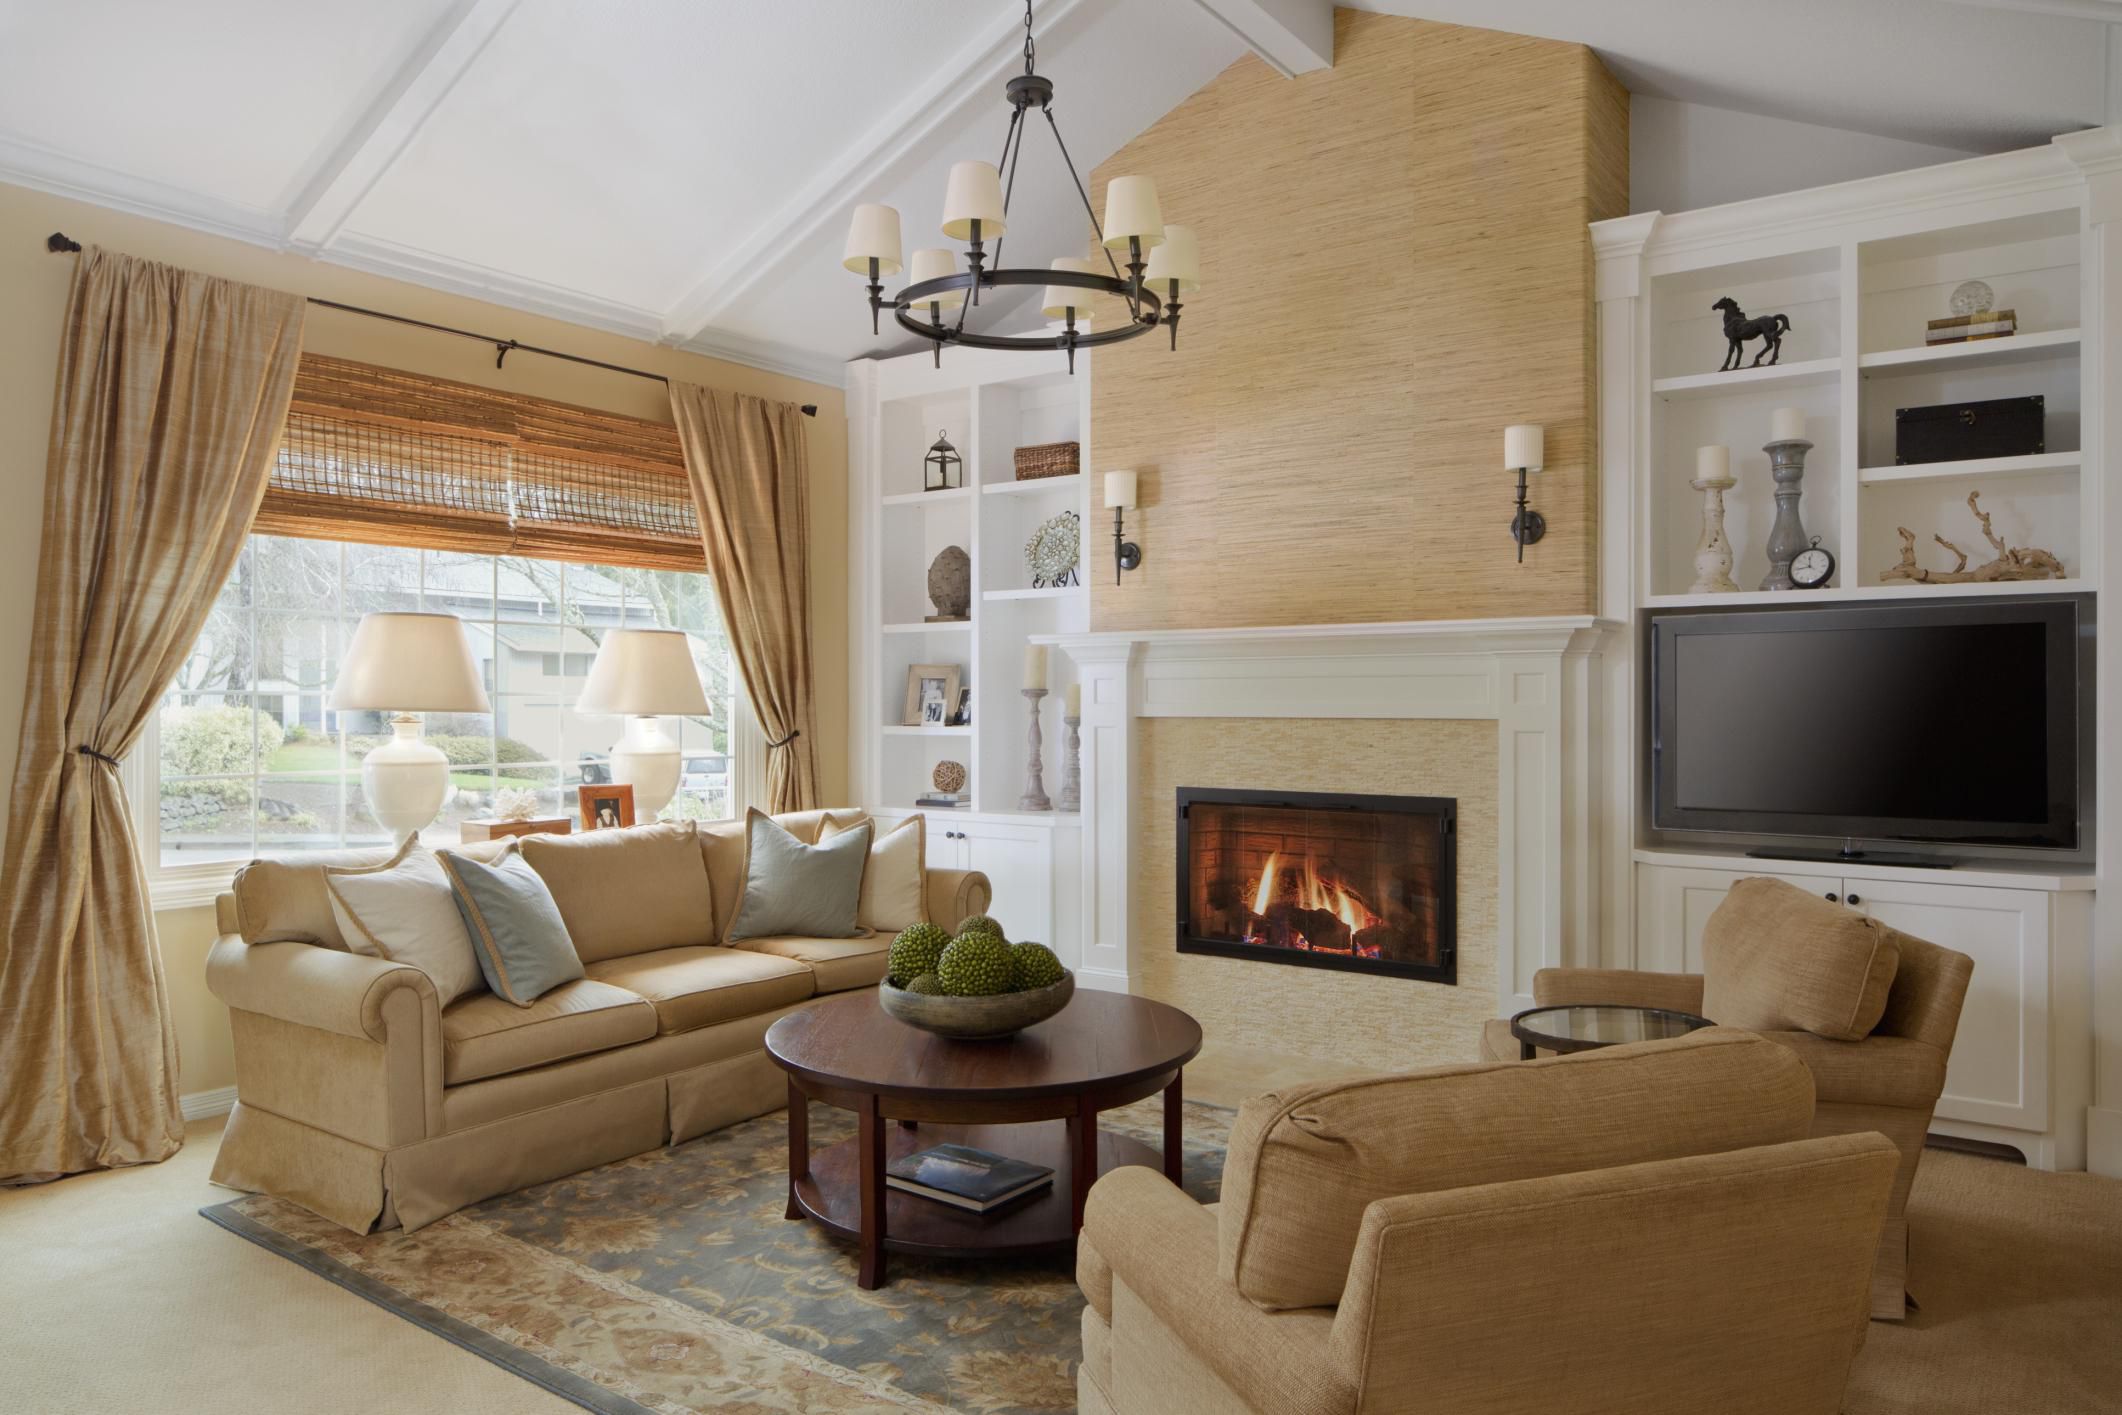 Best Arranging Living Room Furniture Information